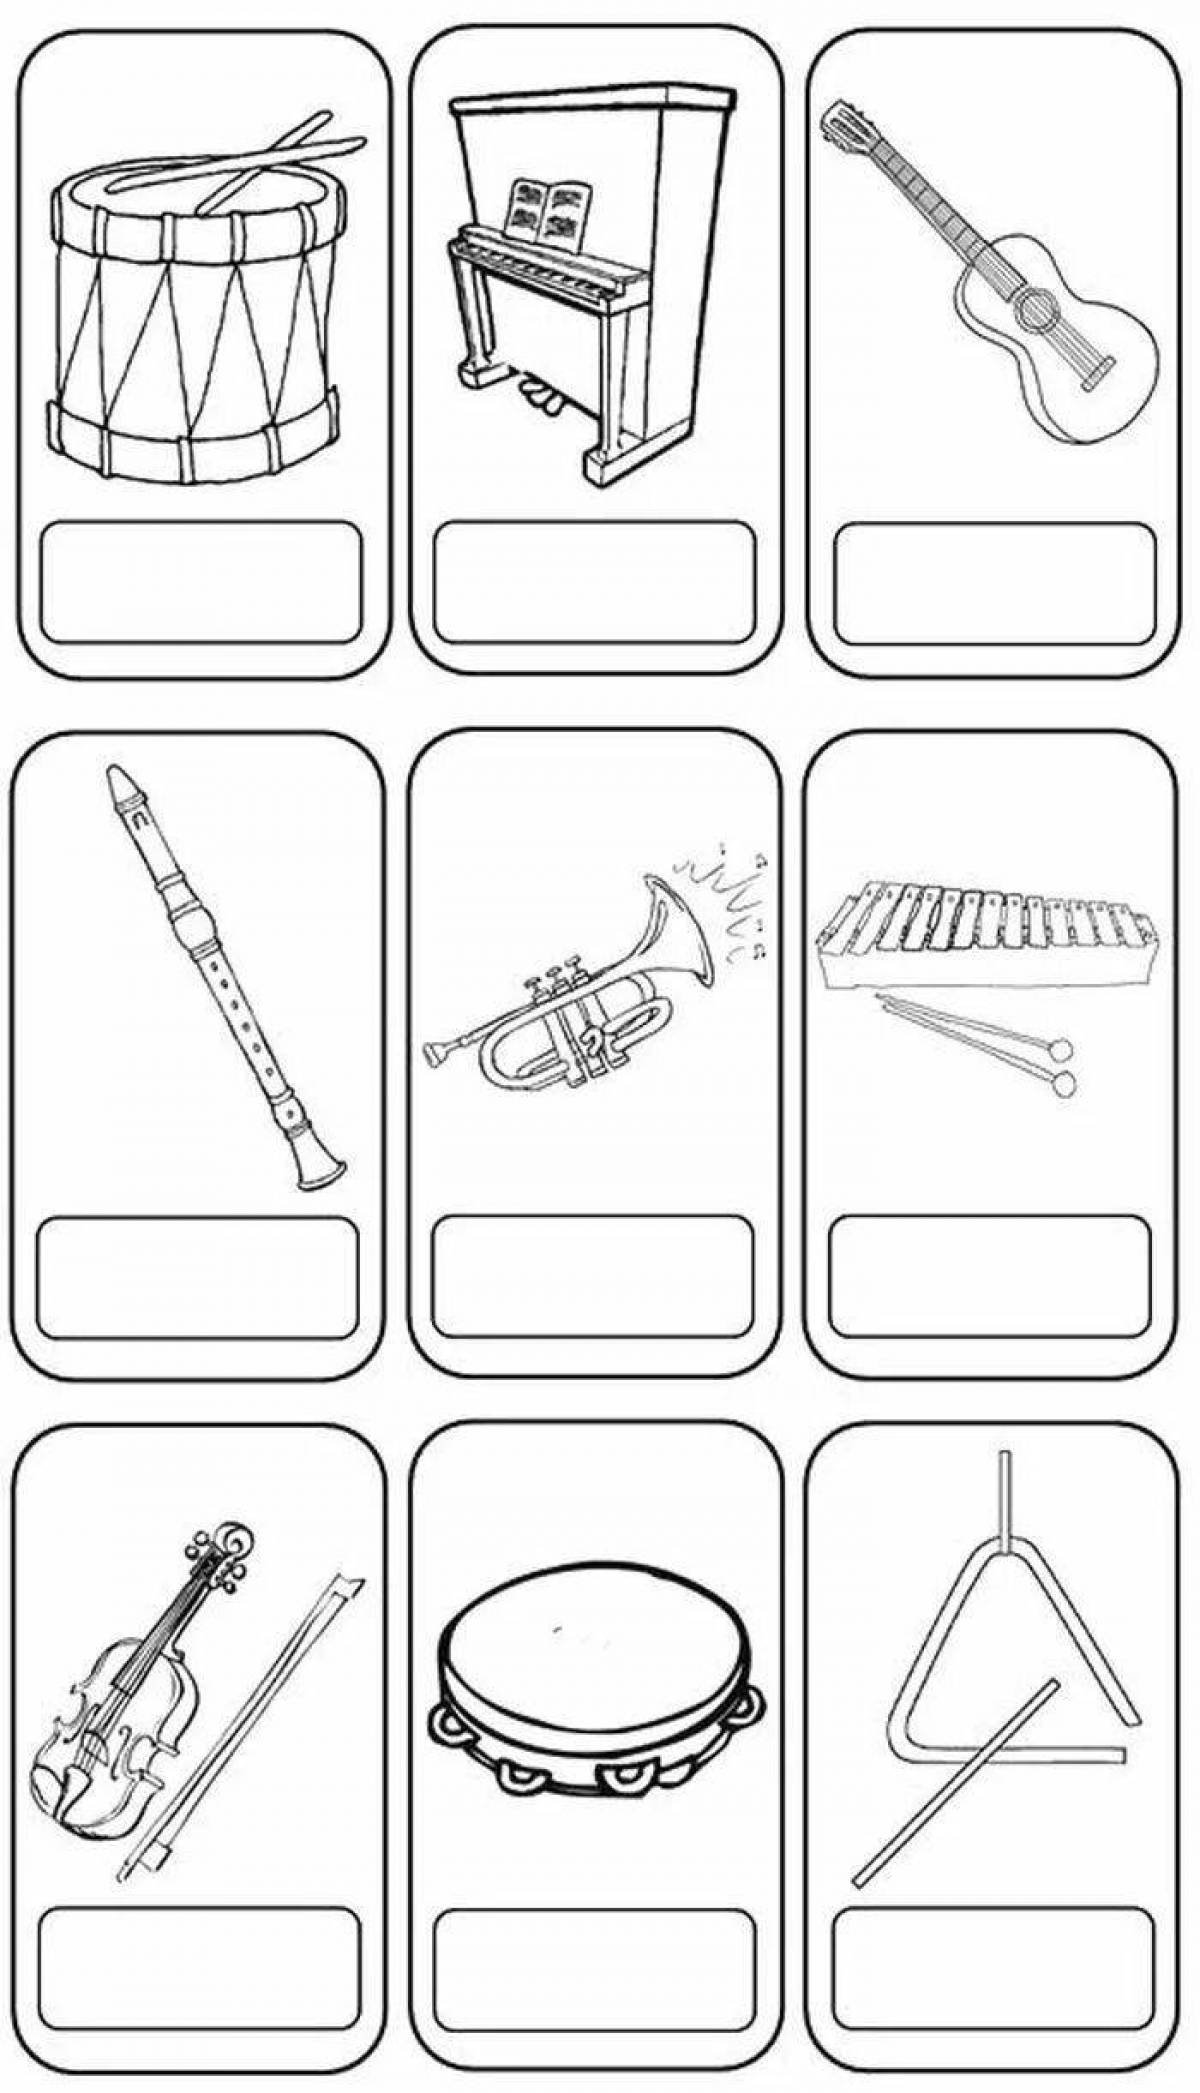 Музыкальные инструменты задачи. Музыкальные инструменты задания для детей. Музыкальные инструменты карточки с заданиями. Задания по музыкальным инструментам. Музыкальные инструменты задания для дошкольников.